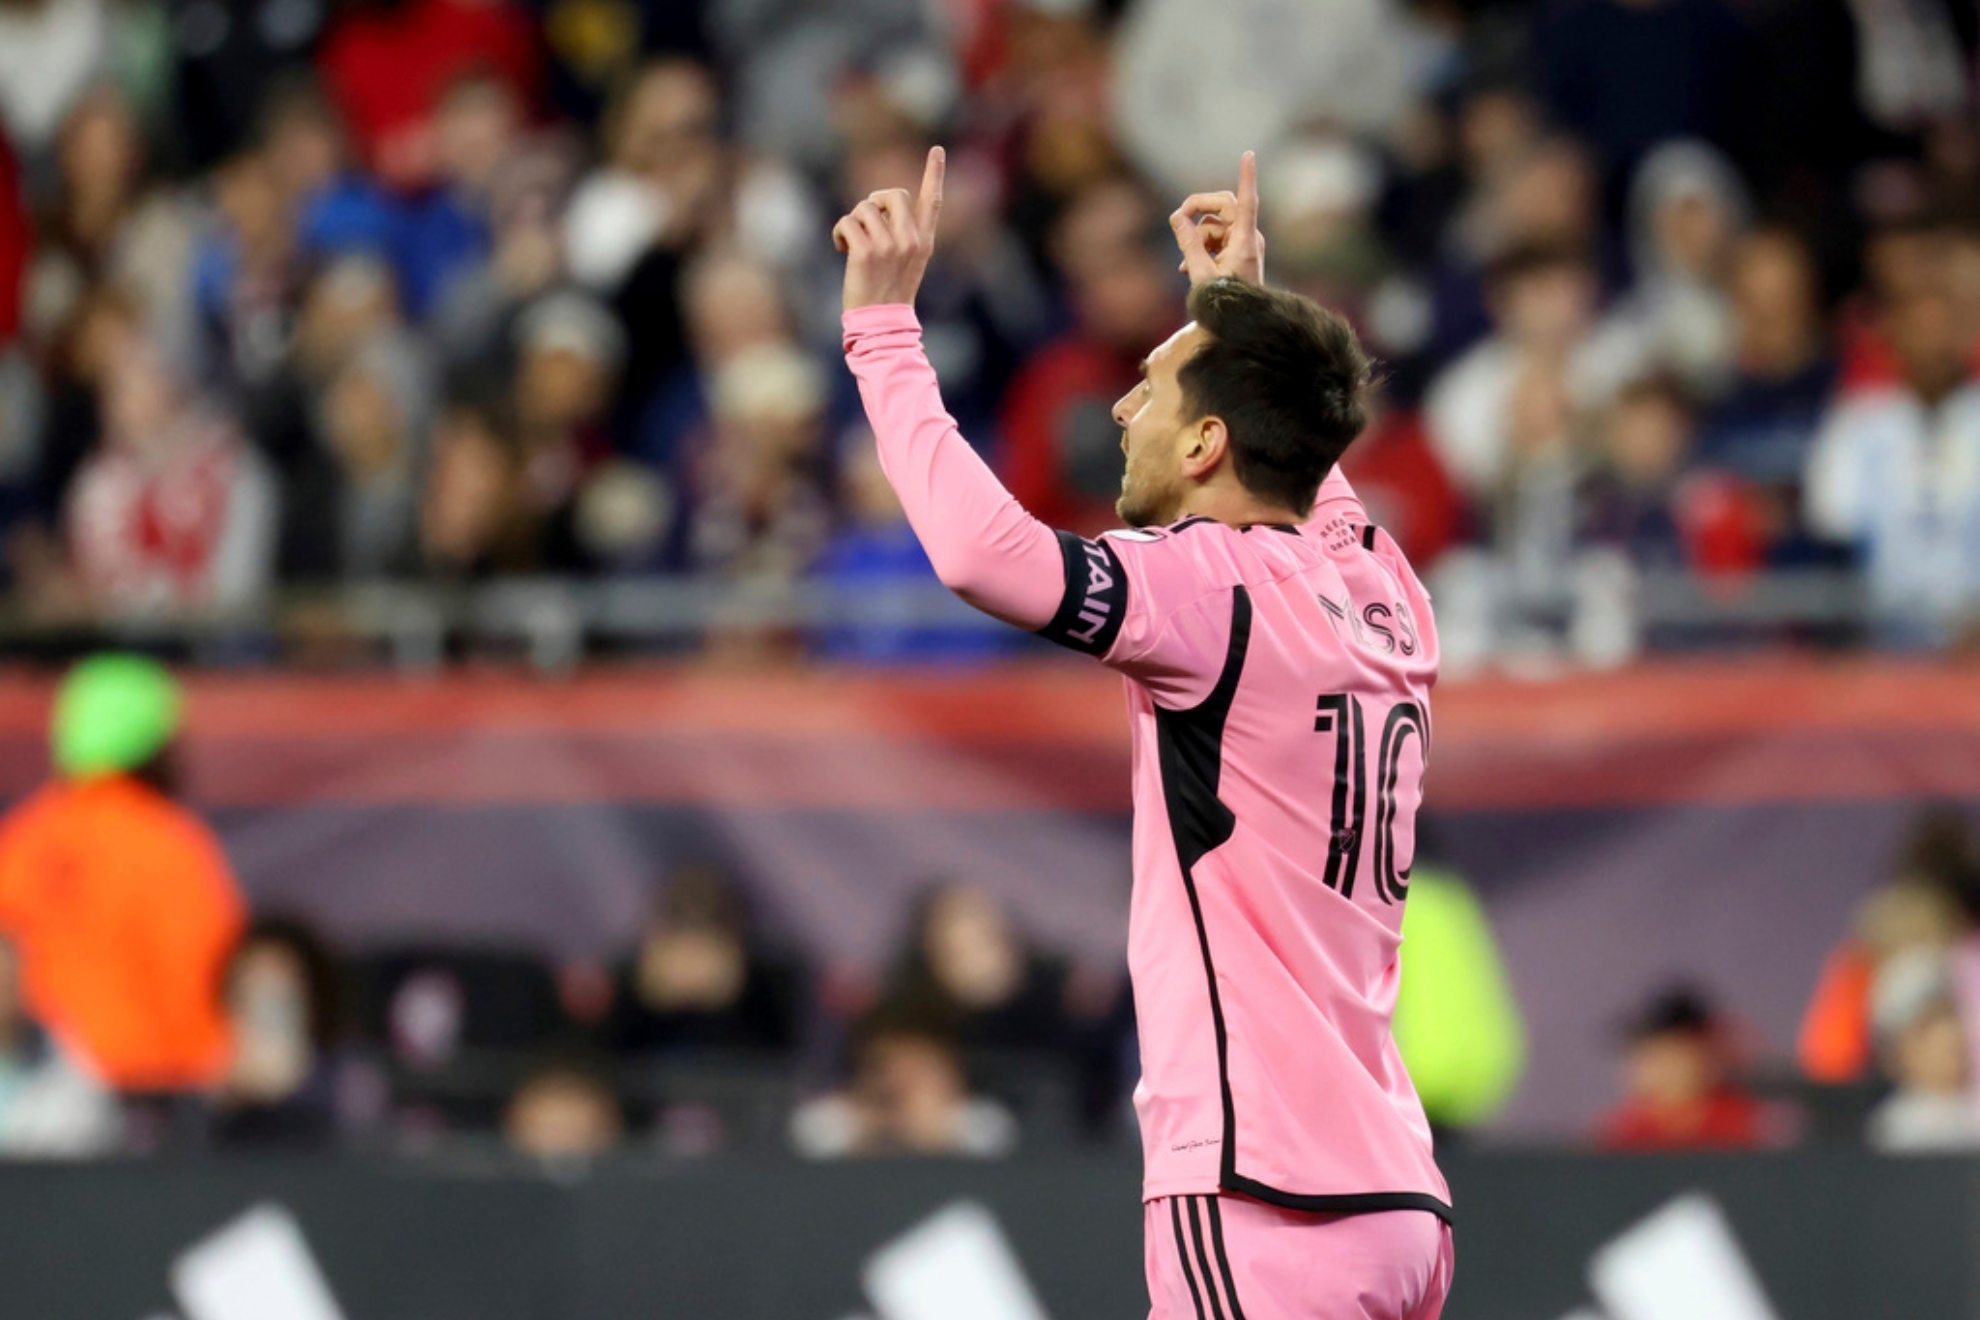 Lionel Messi breaks MLS record as Inter Miami obliterates New England Revolution 4-1